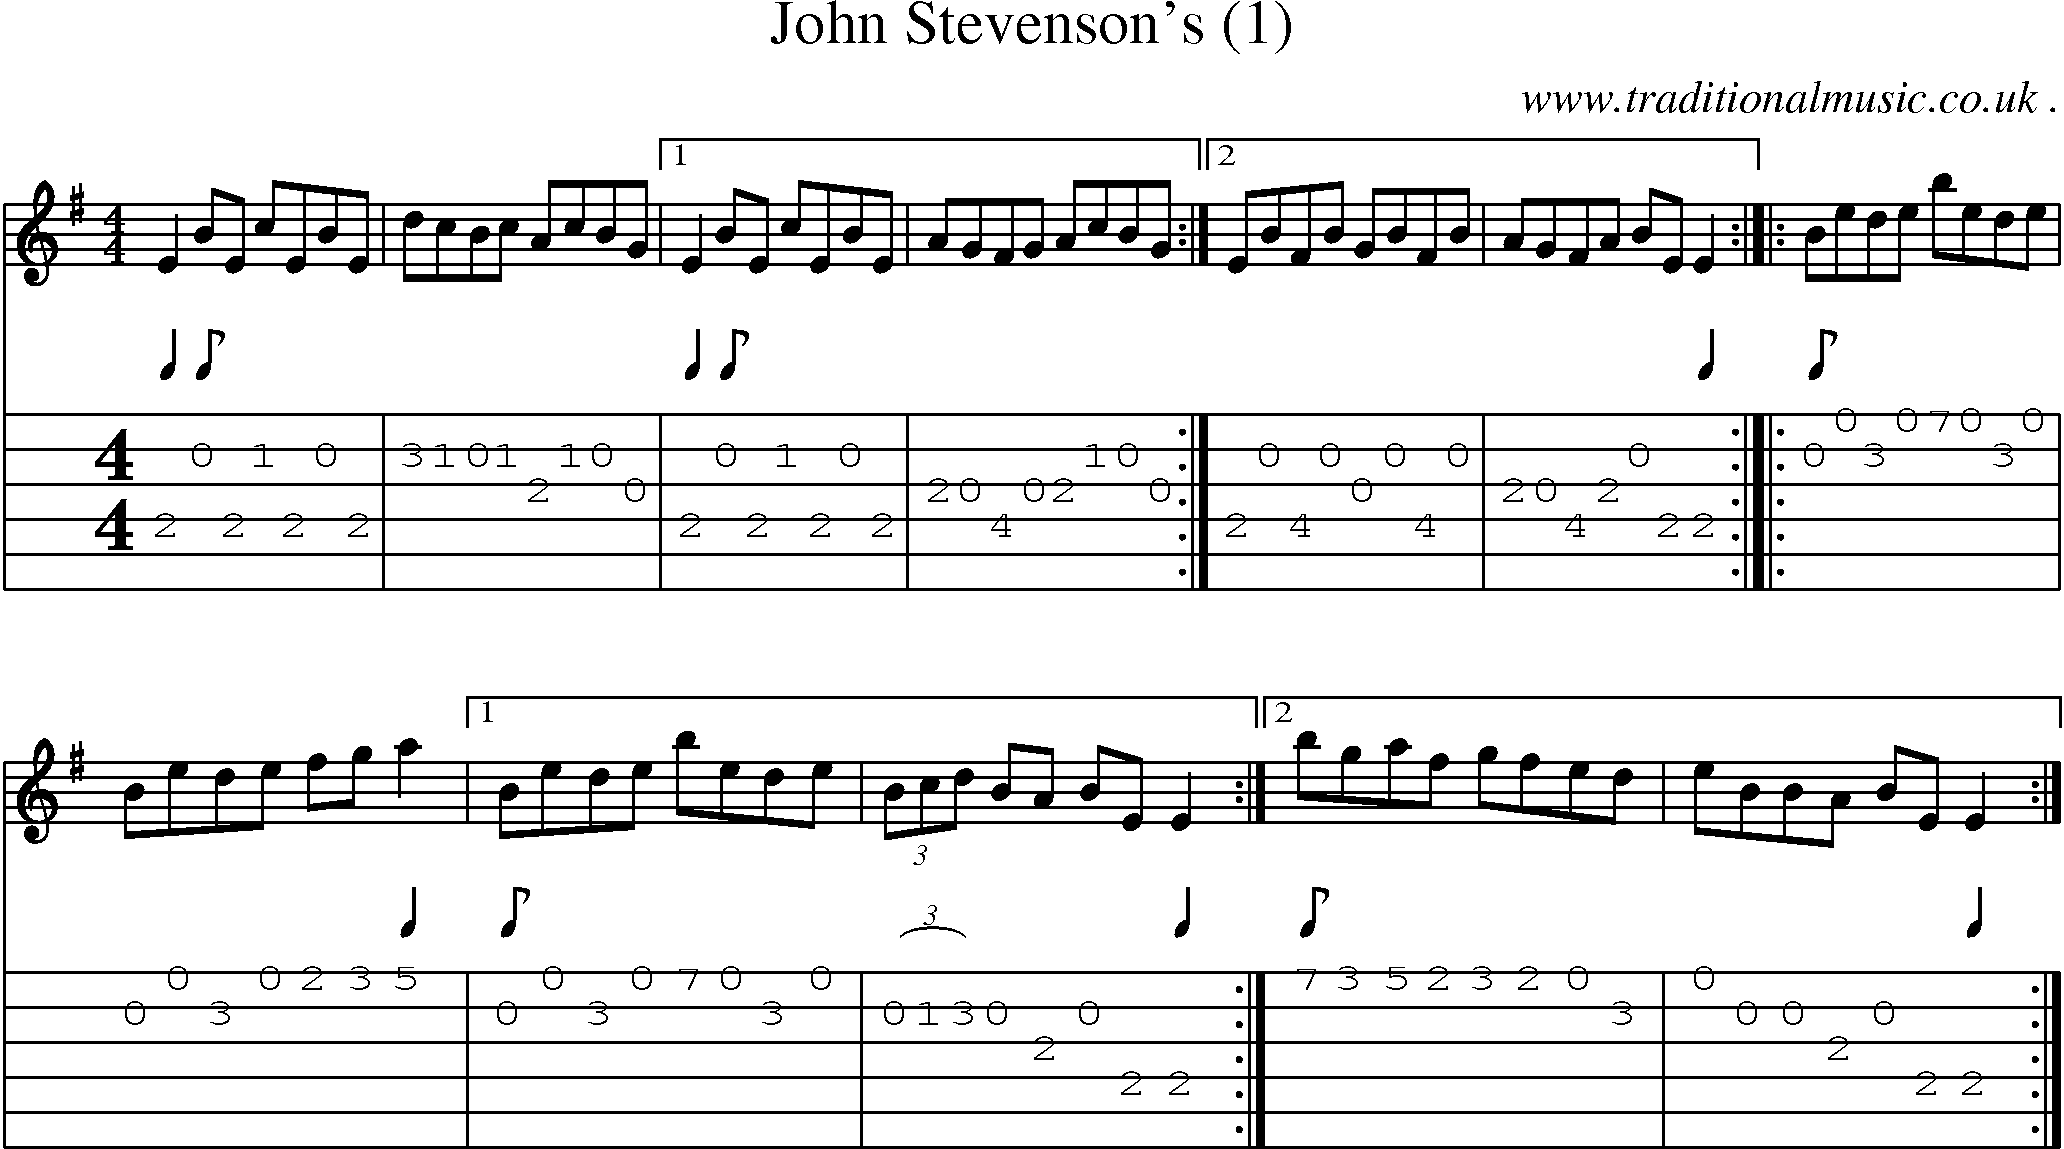 Sheet-Music and Guitar Tabs for John Stevensons (1)